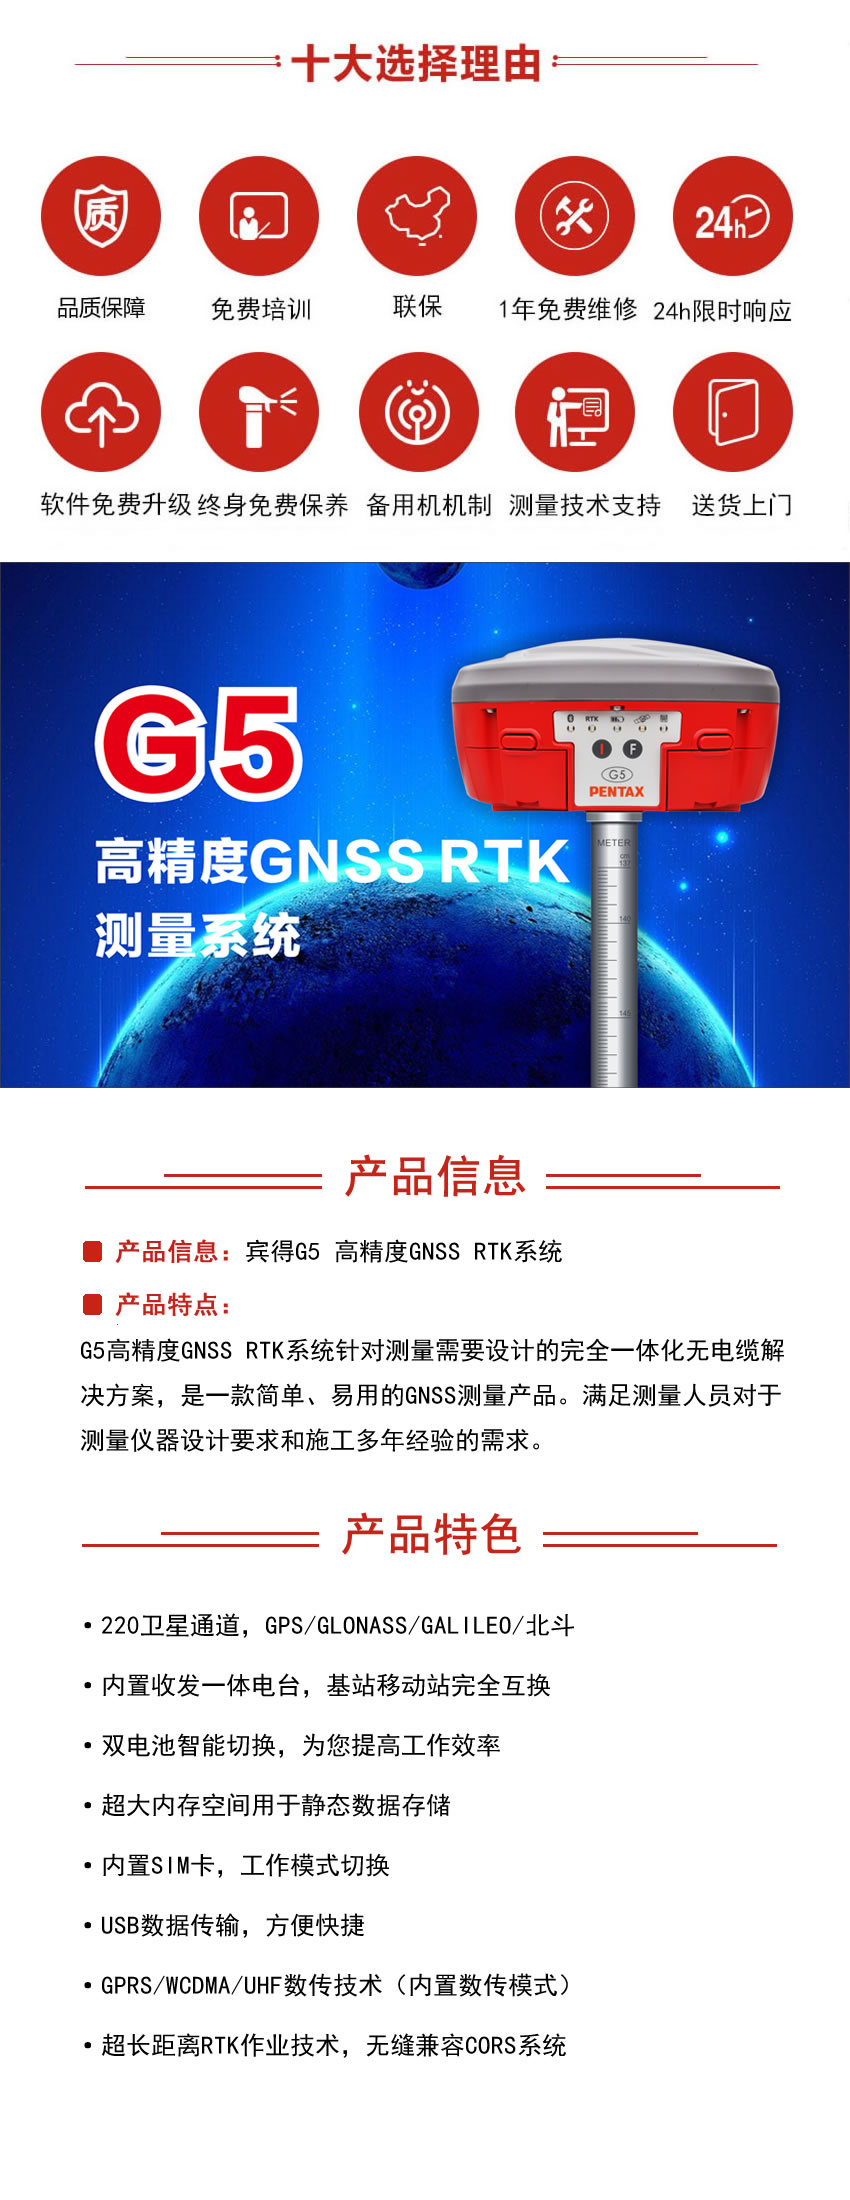 宾得G5高精度GNSS RTK系统.jpg